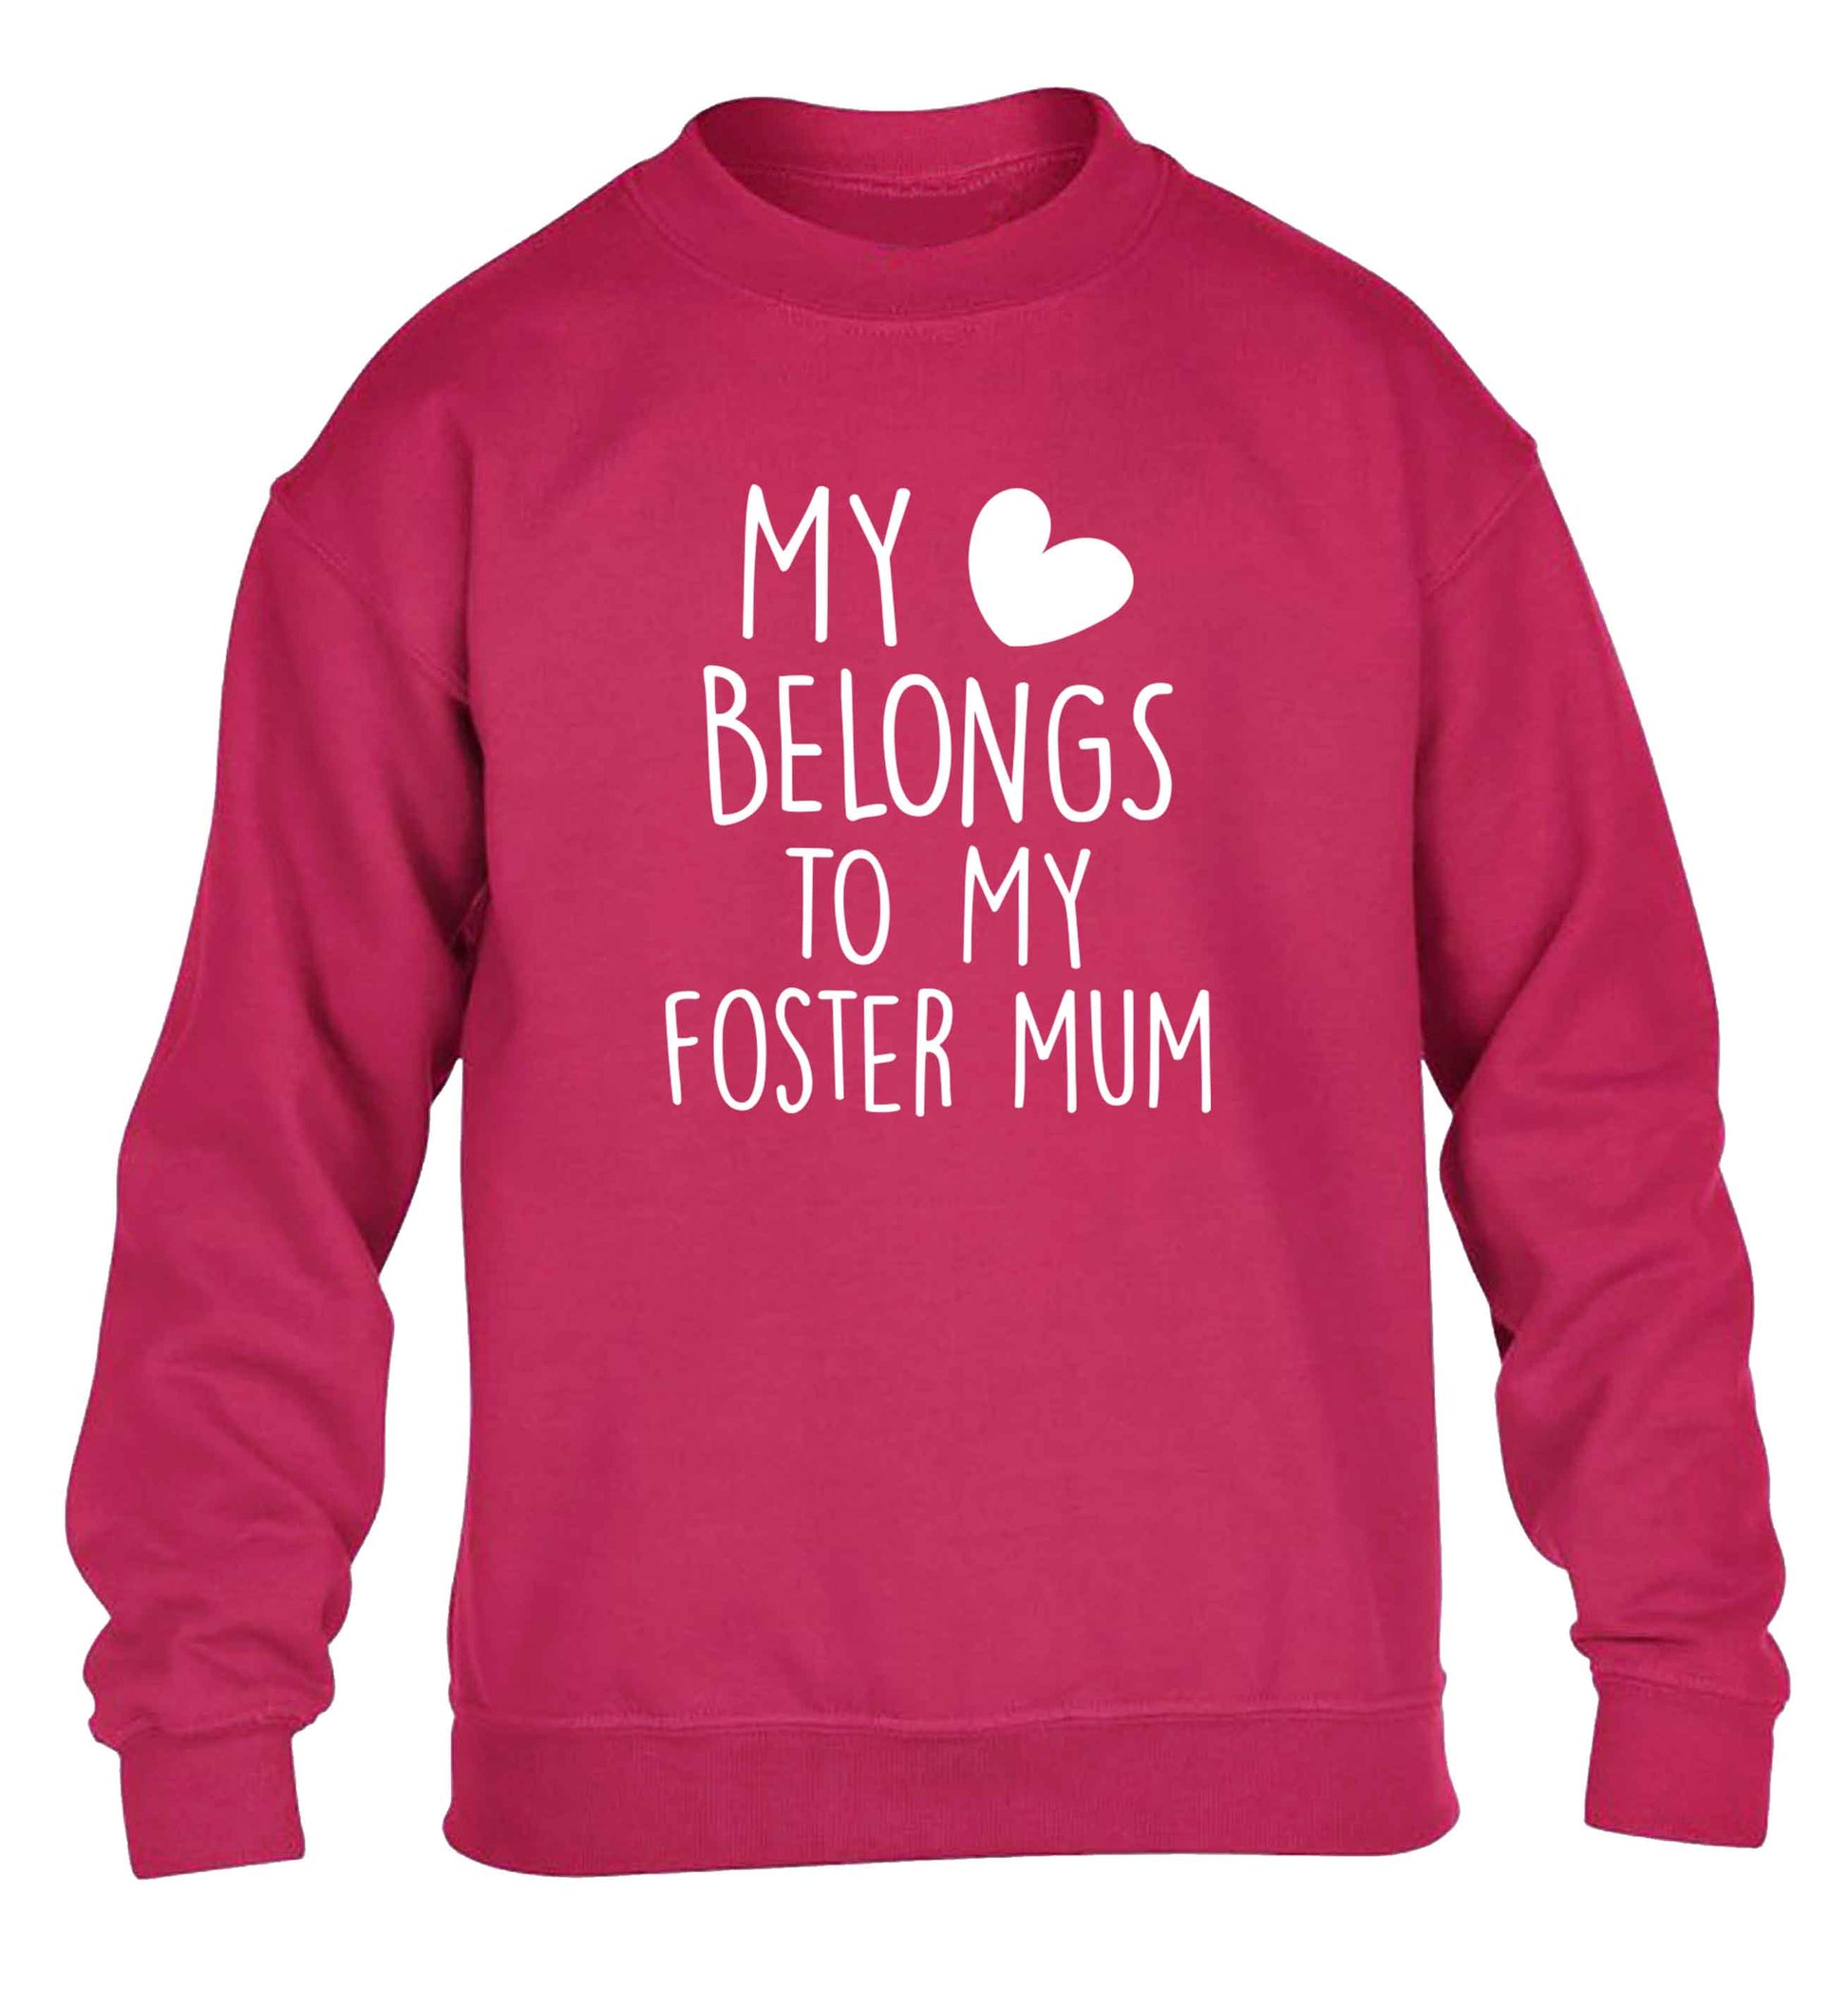 My heart belongs to my foster mum children's pink sweater 12-13 Years